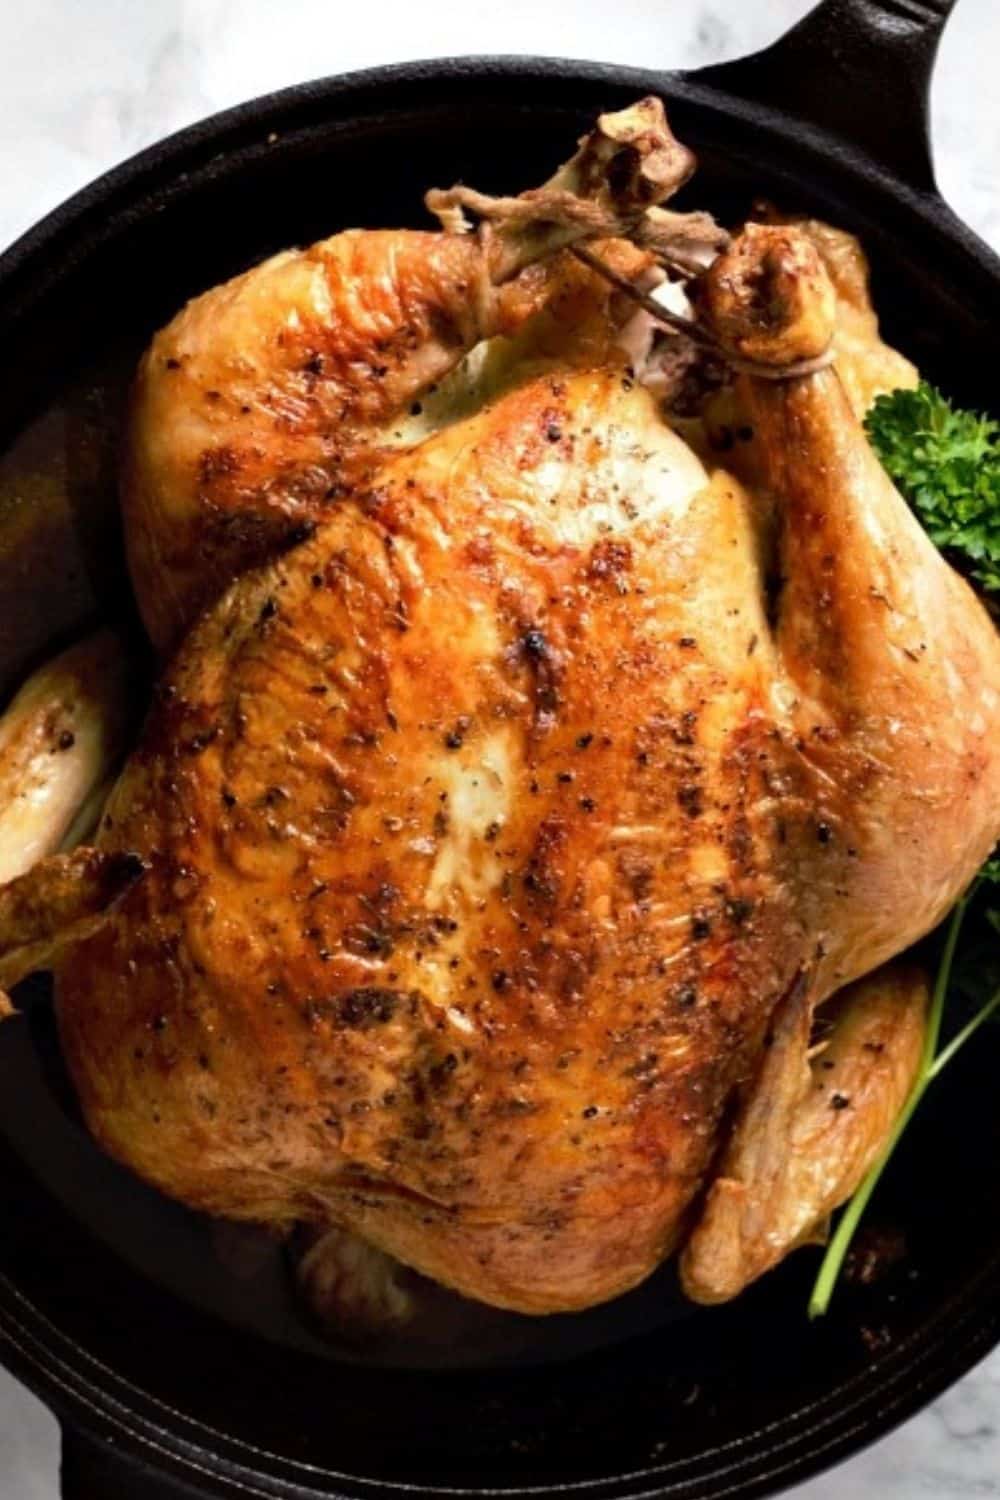 https://zonacooks.com/wp-content/uploads/2018/11/Easy-Juicy-Roast-Chicken-Recipe-26.jpg